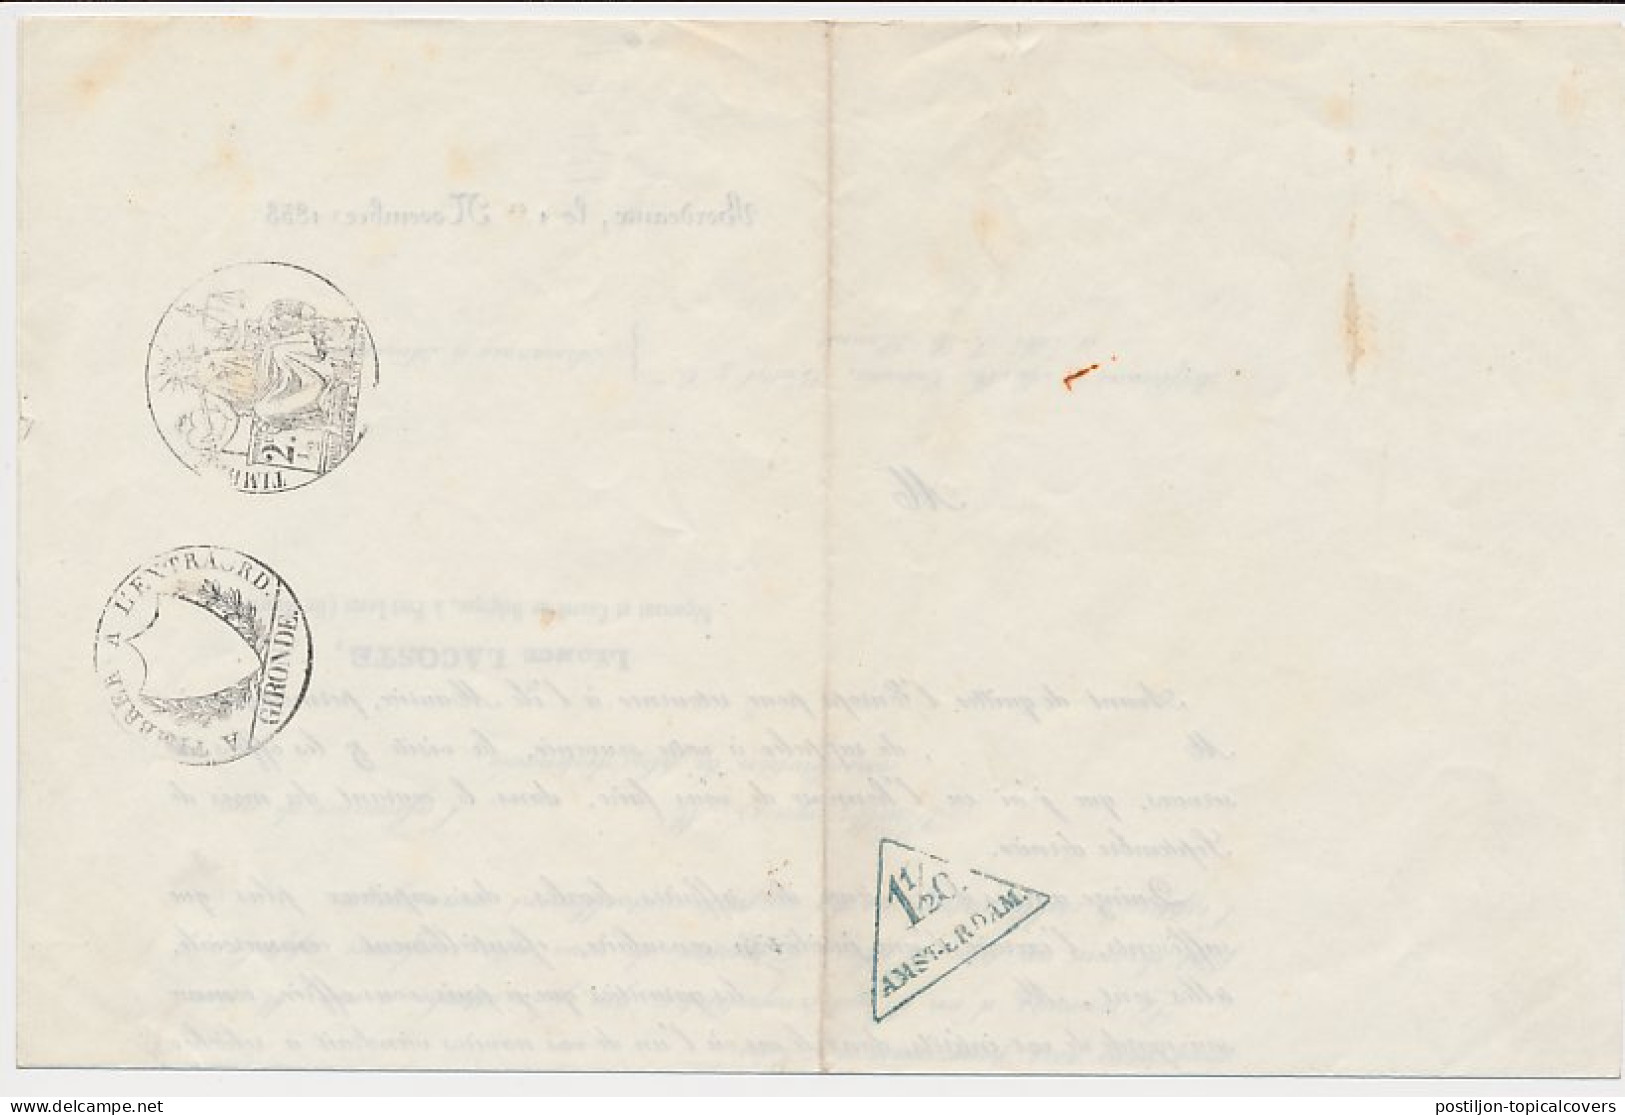 Amsterdam 1 1/2 C. Drukwerk Driehoekstempel 1853 - Revenue Stamps